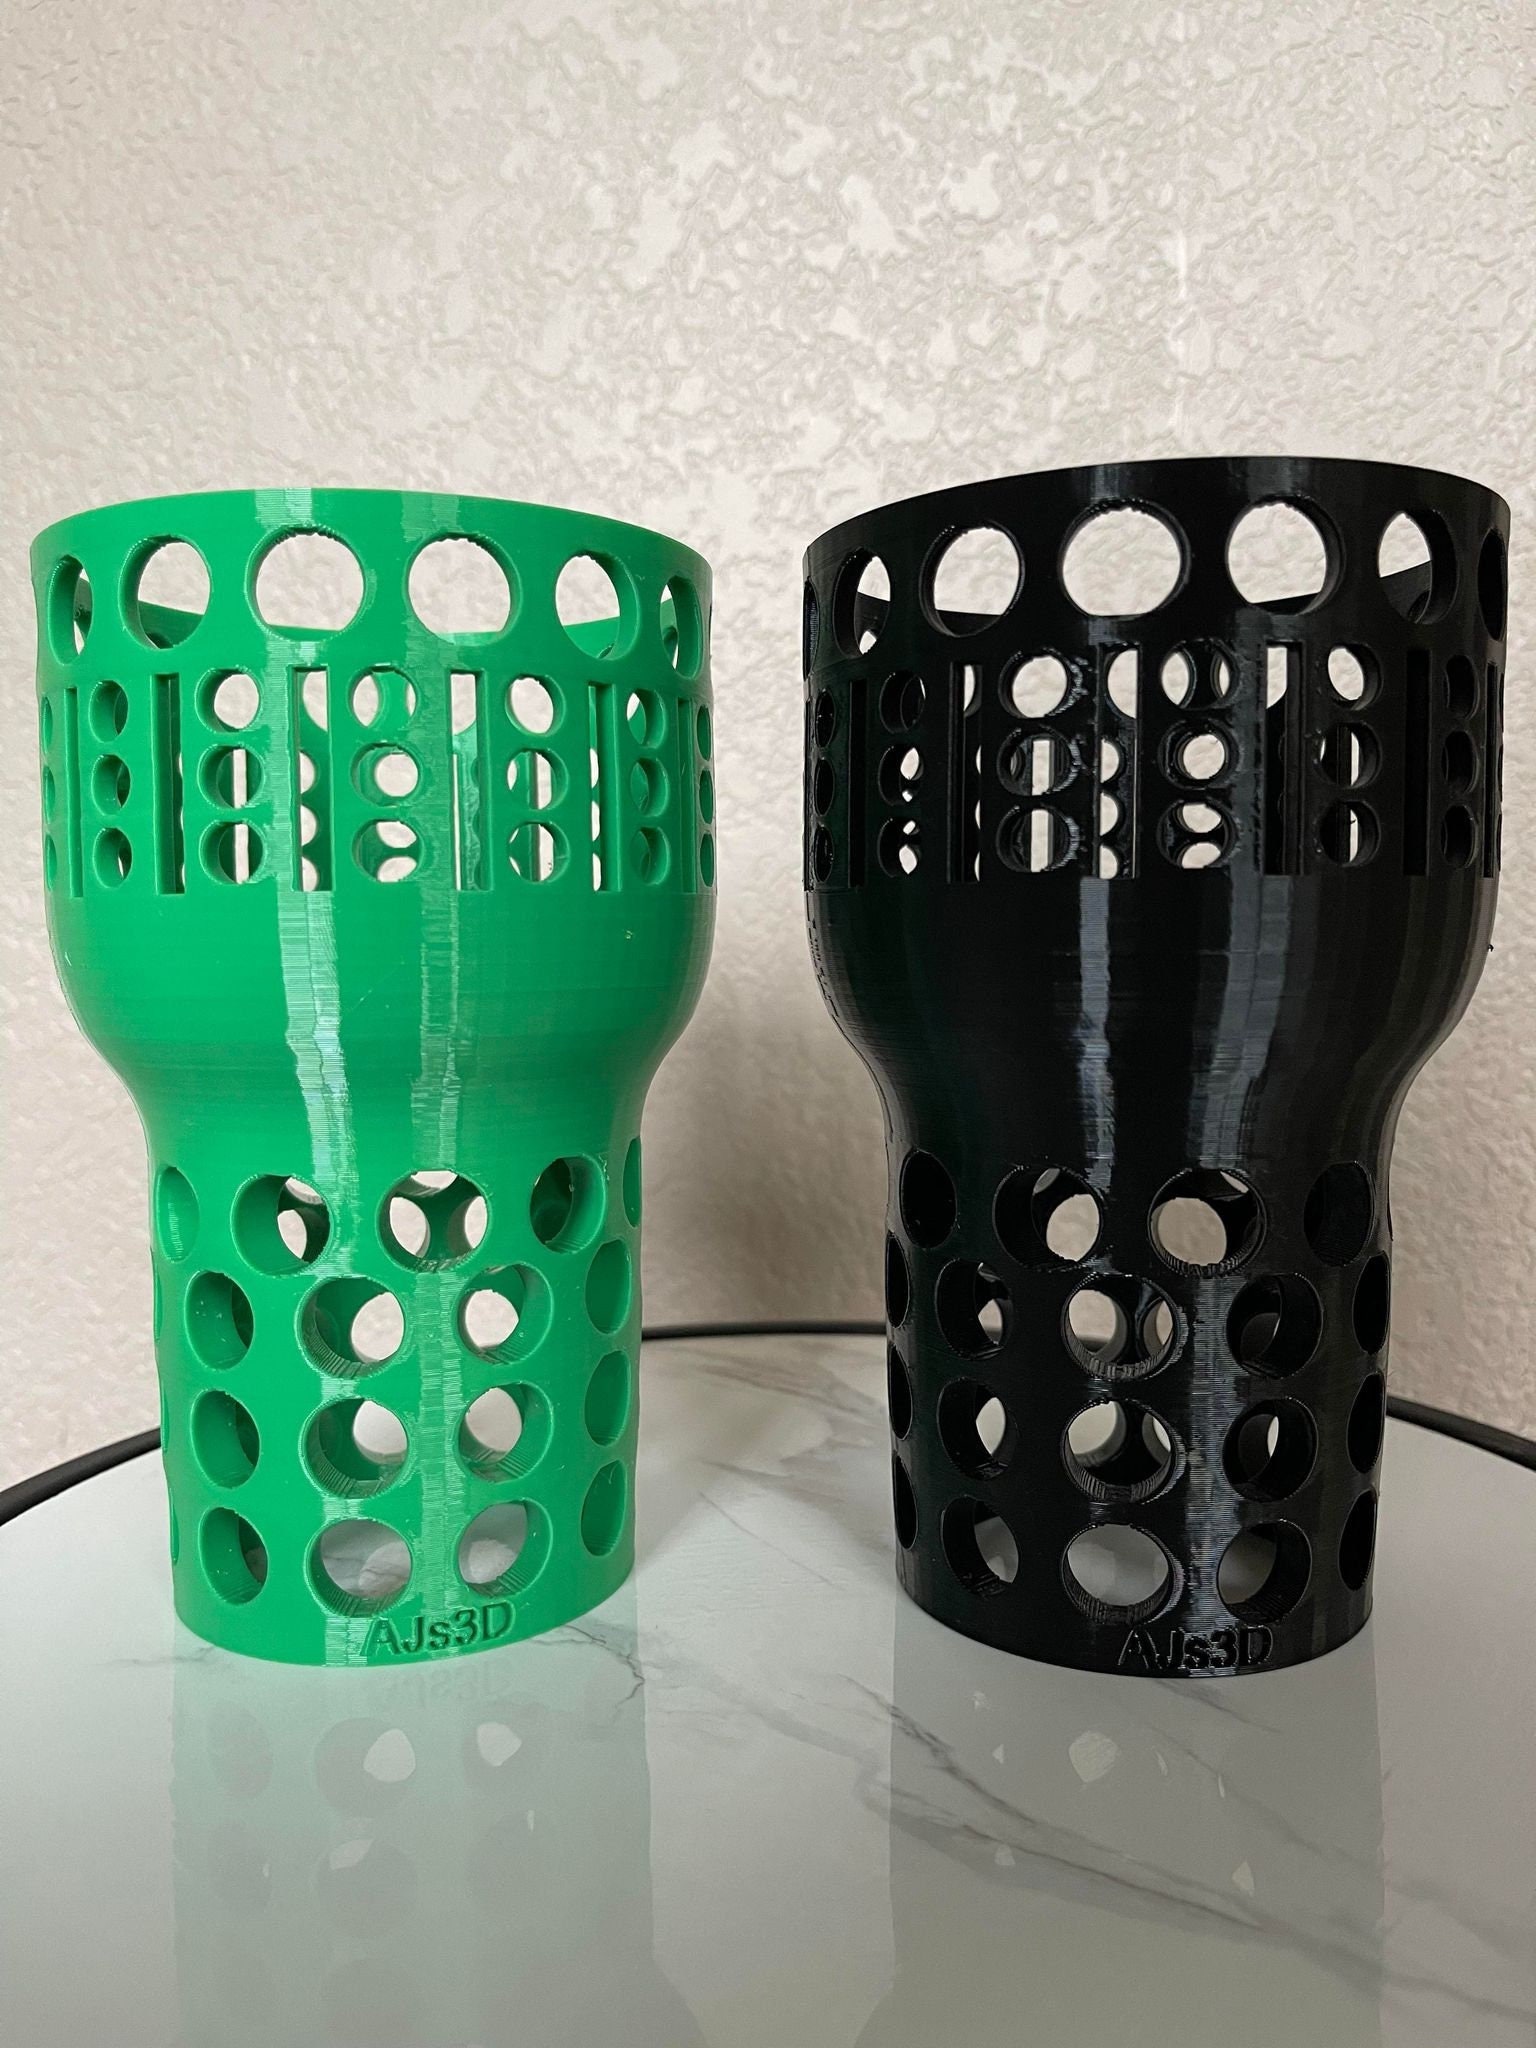 3-D Printable] Unspillable Cup Mechanism